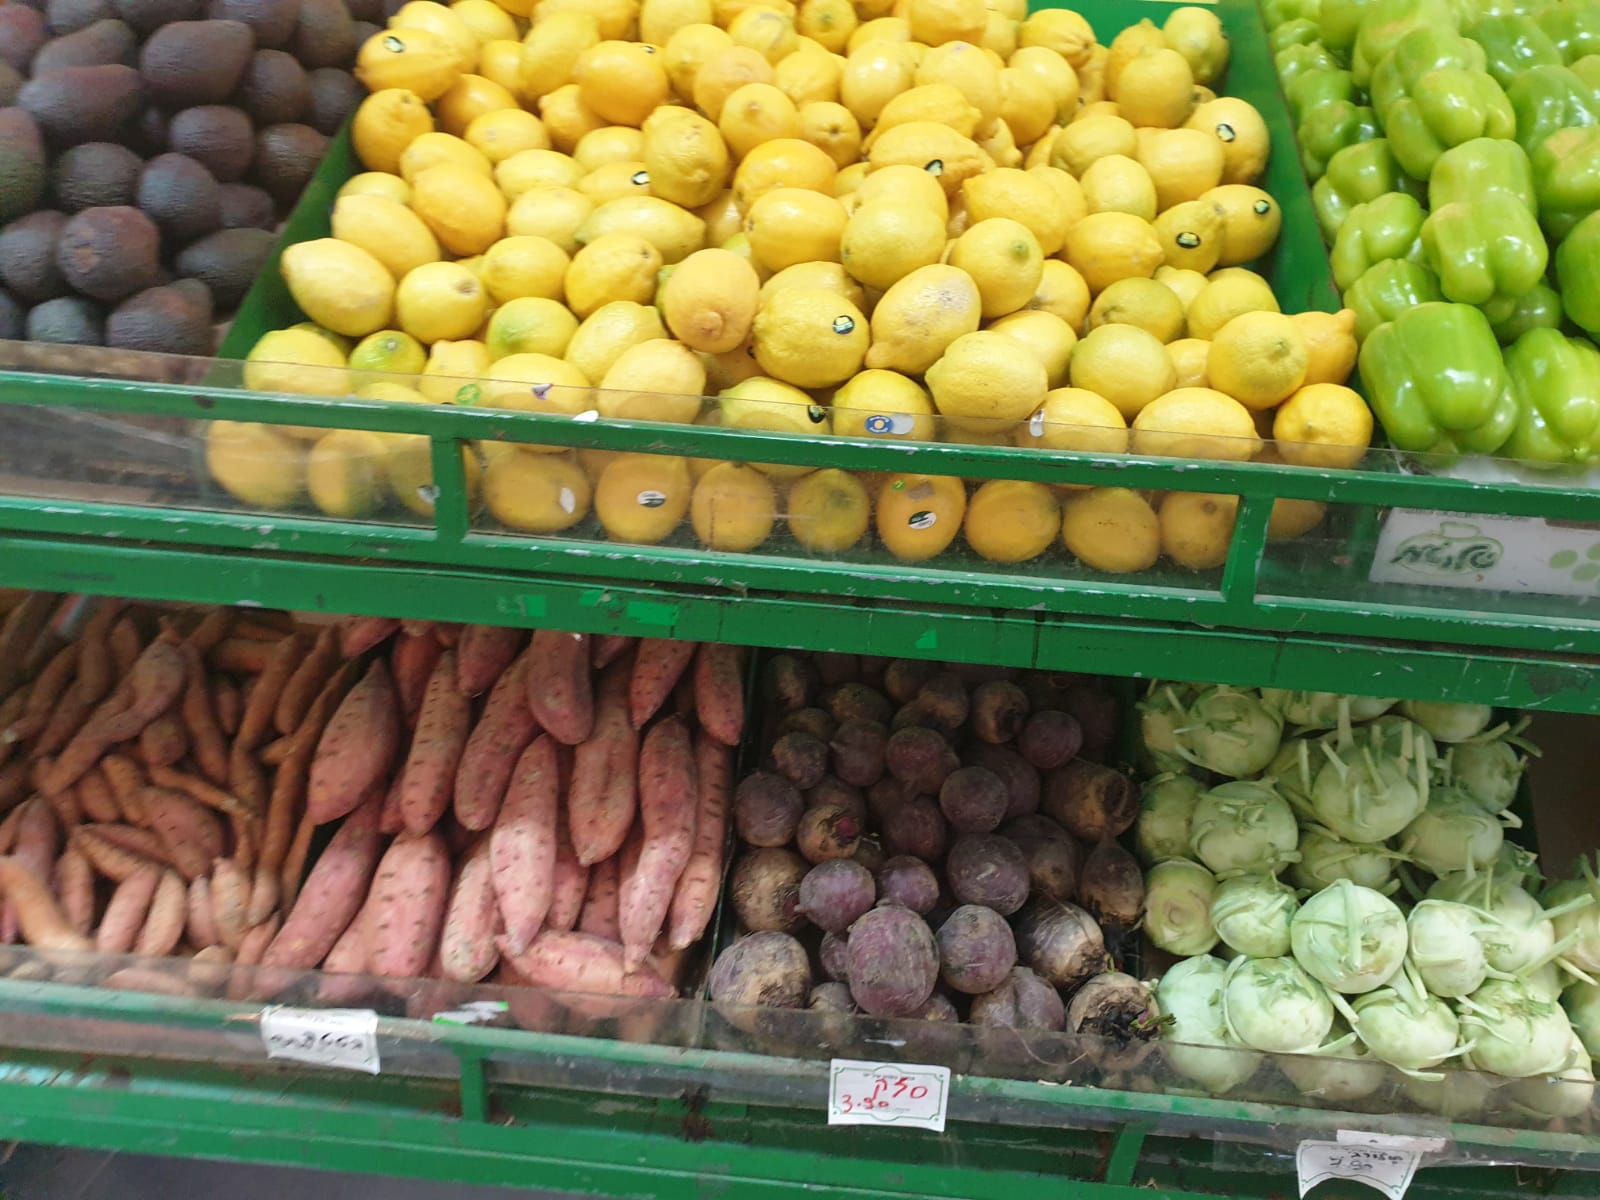 أسعار خيالية لا تنافس لدى سوق يافا للخضار والفواكه الطازجة